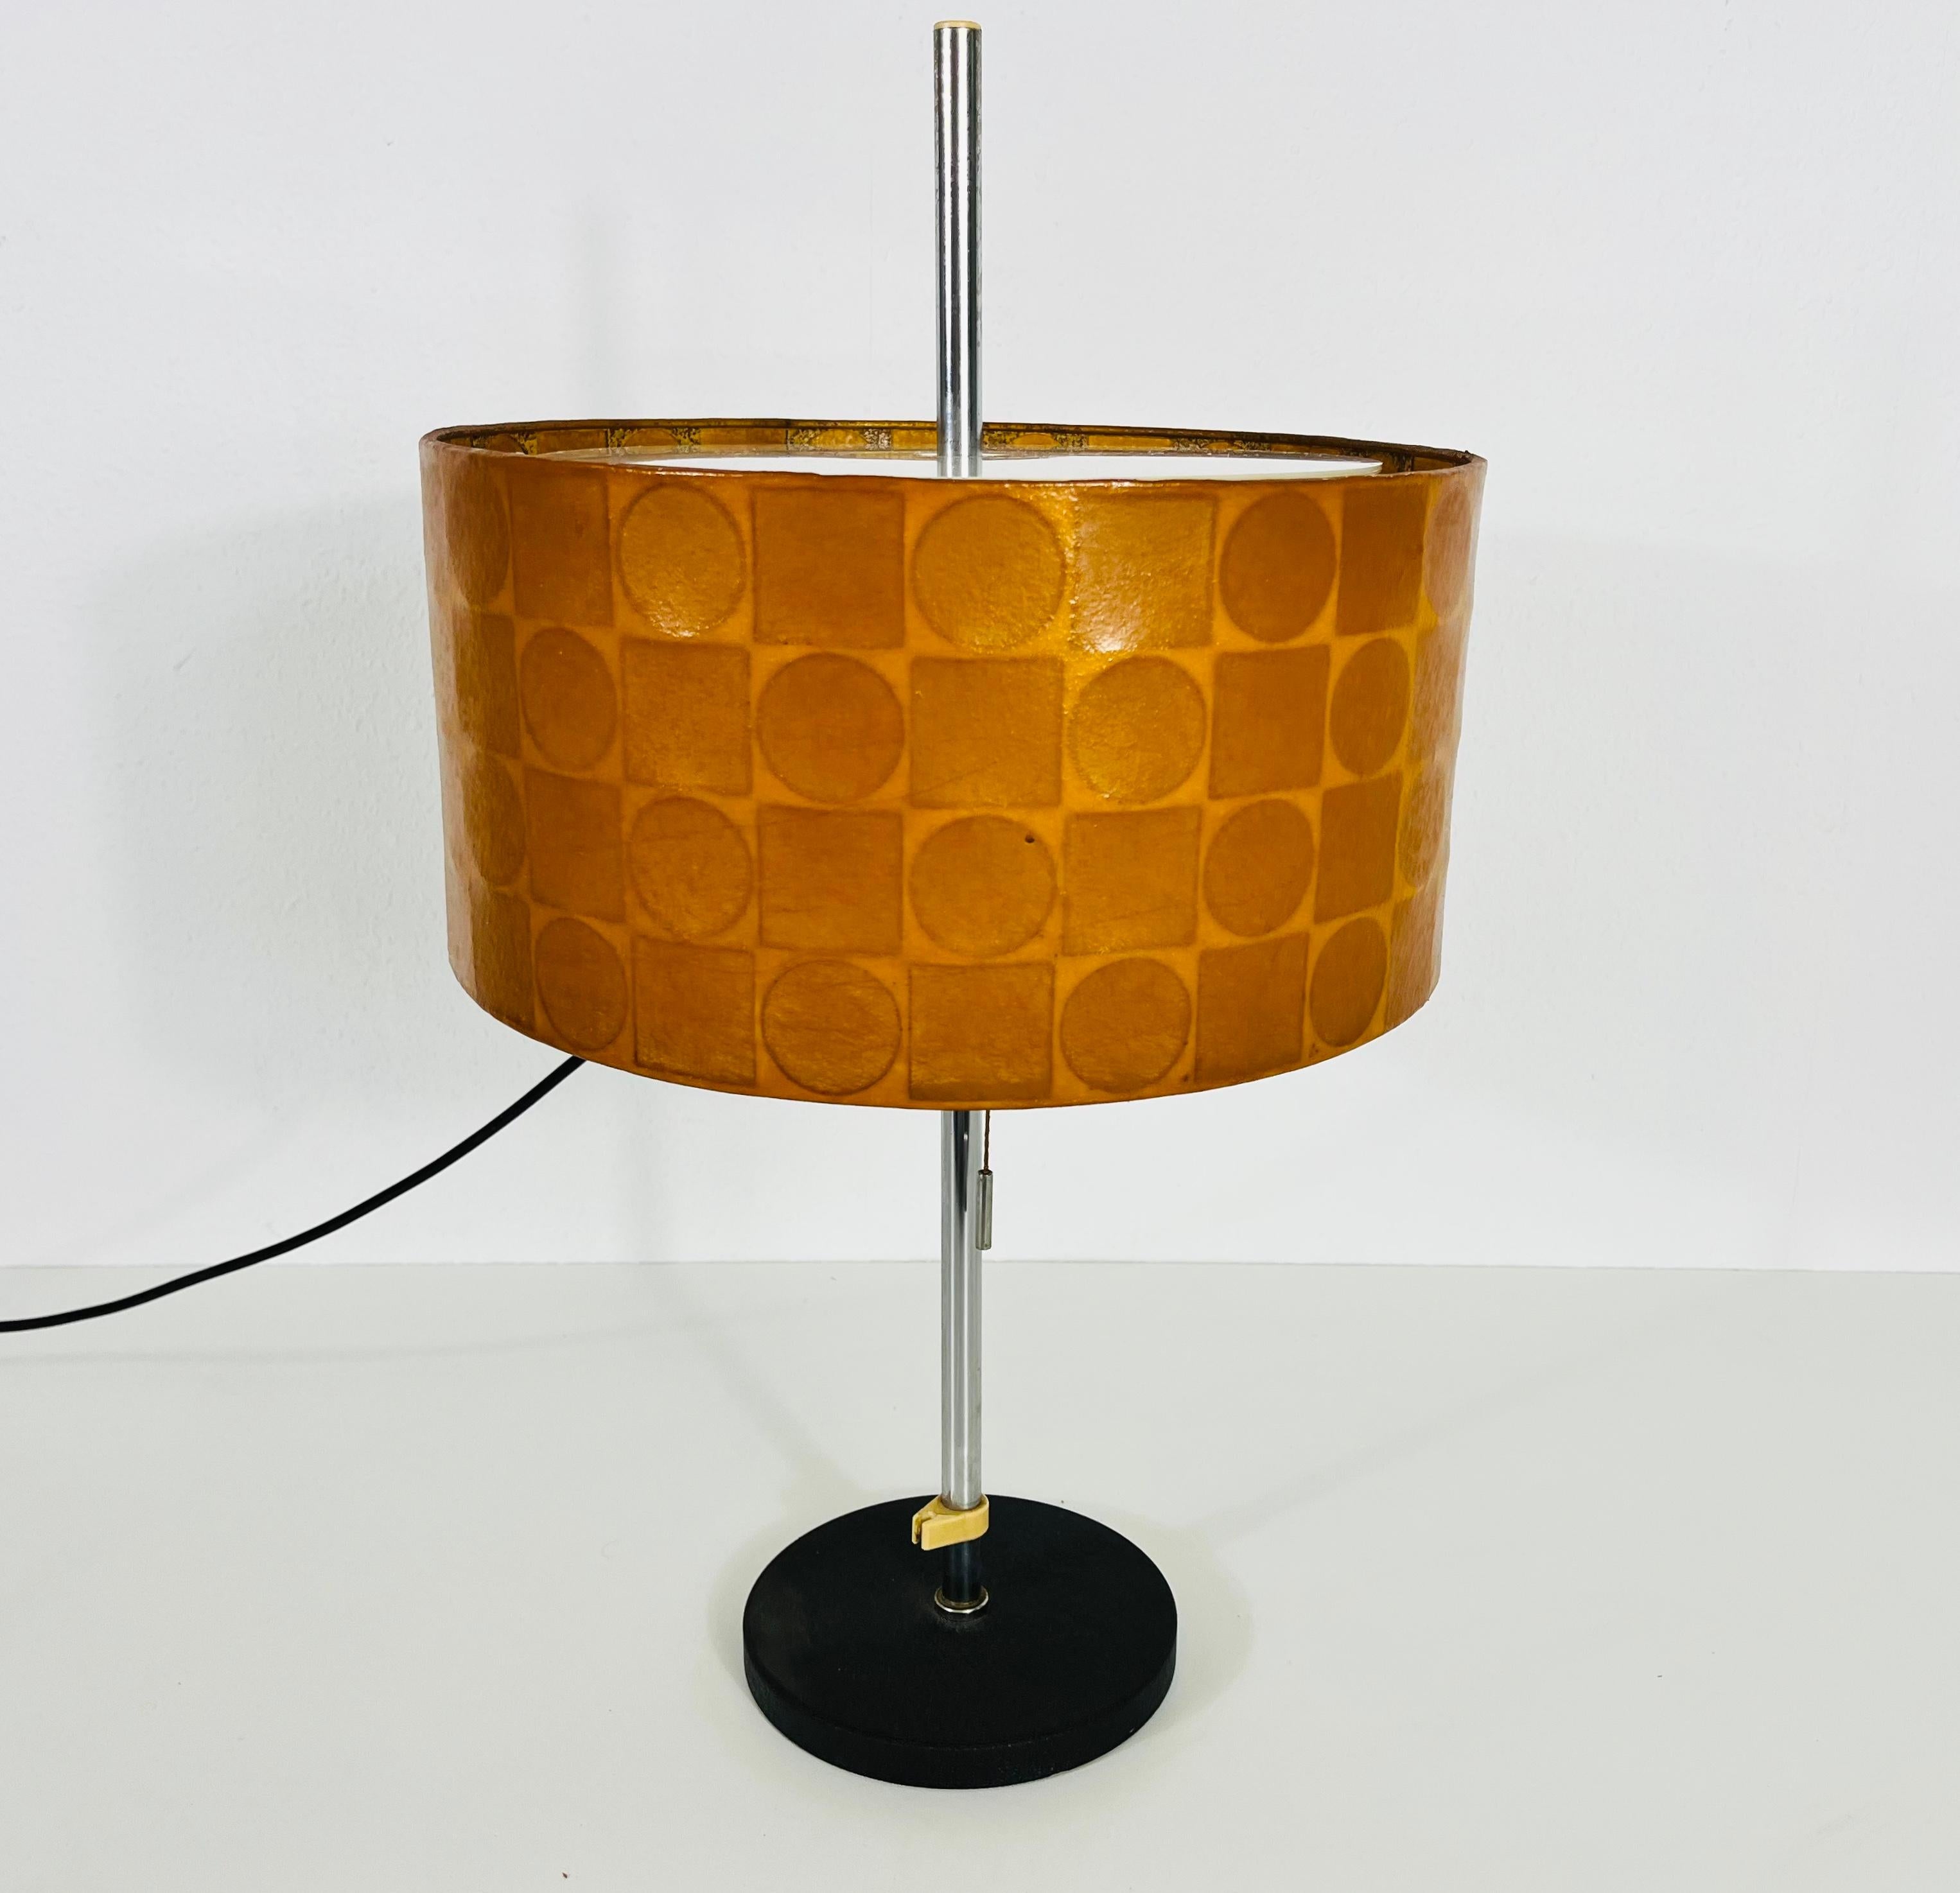 Lampe de table Cocoon fabriquée en Allemagne par Goldkantin dans les années 1960. L'abat-jour est en cocon et a une belle forme. 

La lampe nécessite une ampoule E27 (US E26). Fonctionne avec les deux 120/220V. Bon état vintage.

Expédition